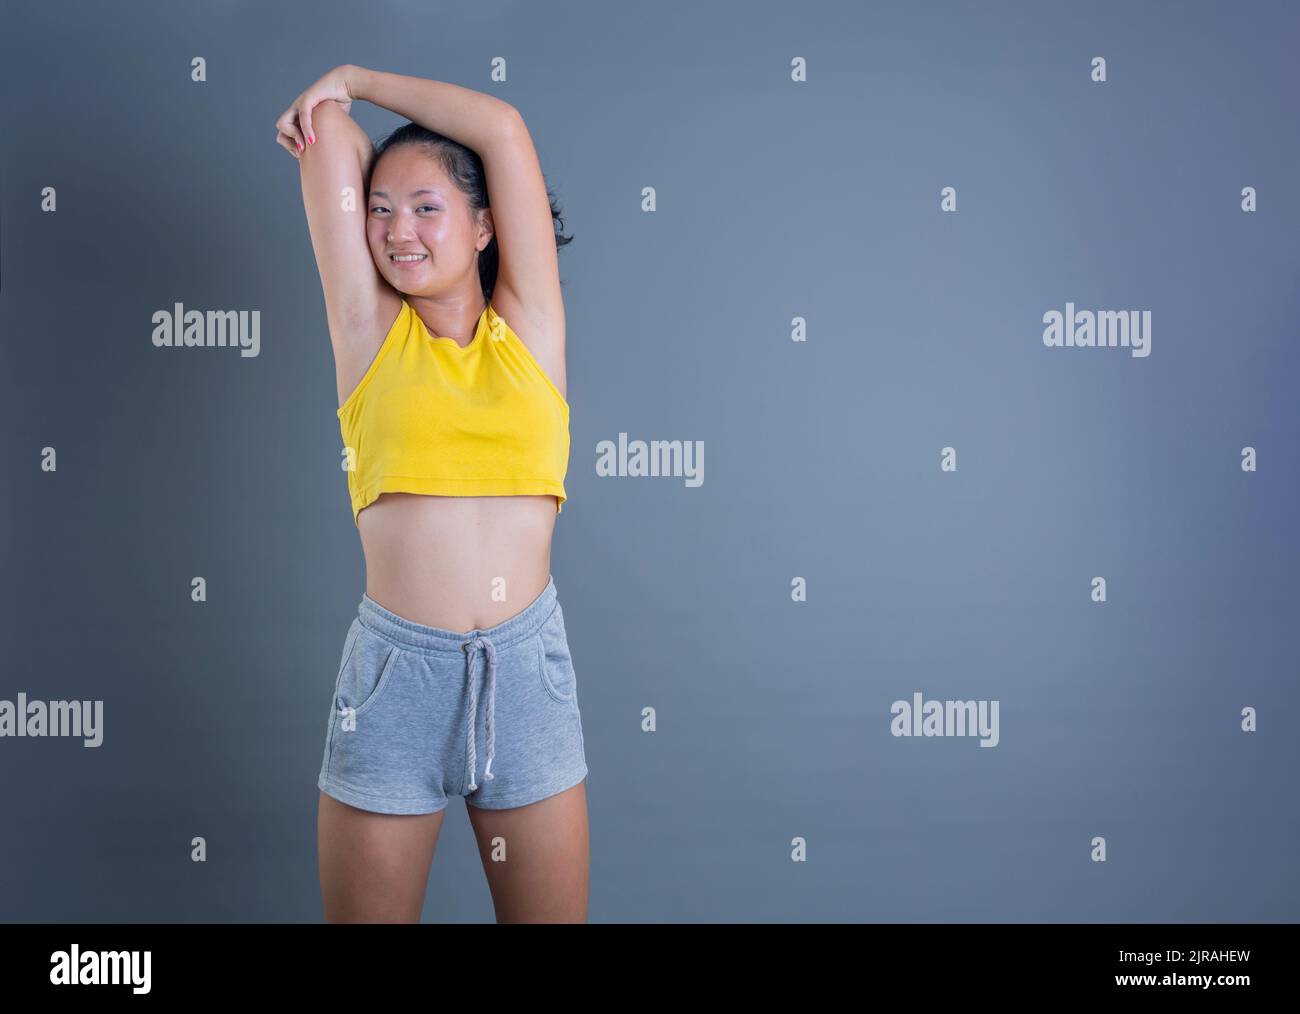 jolie jeune fille de vêtements de sport d'origine asiatique isolée sur fond gris Banque D'Images